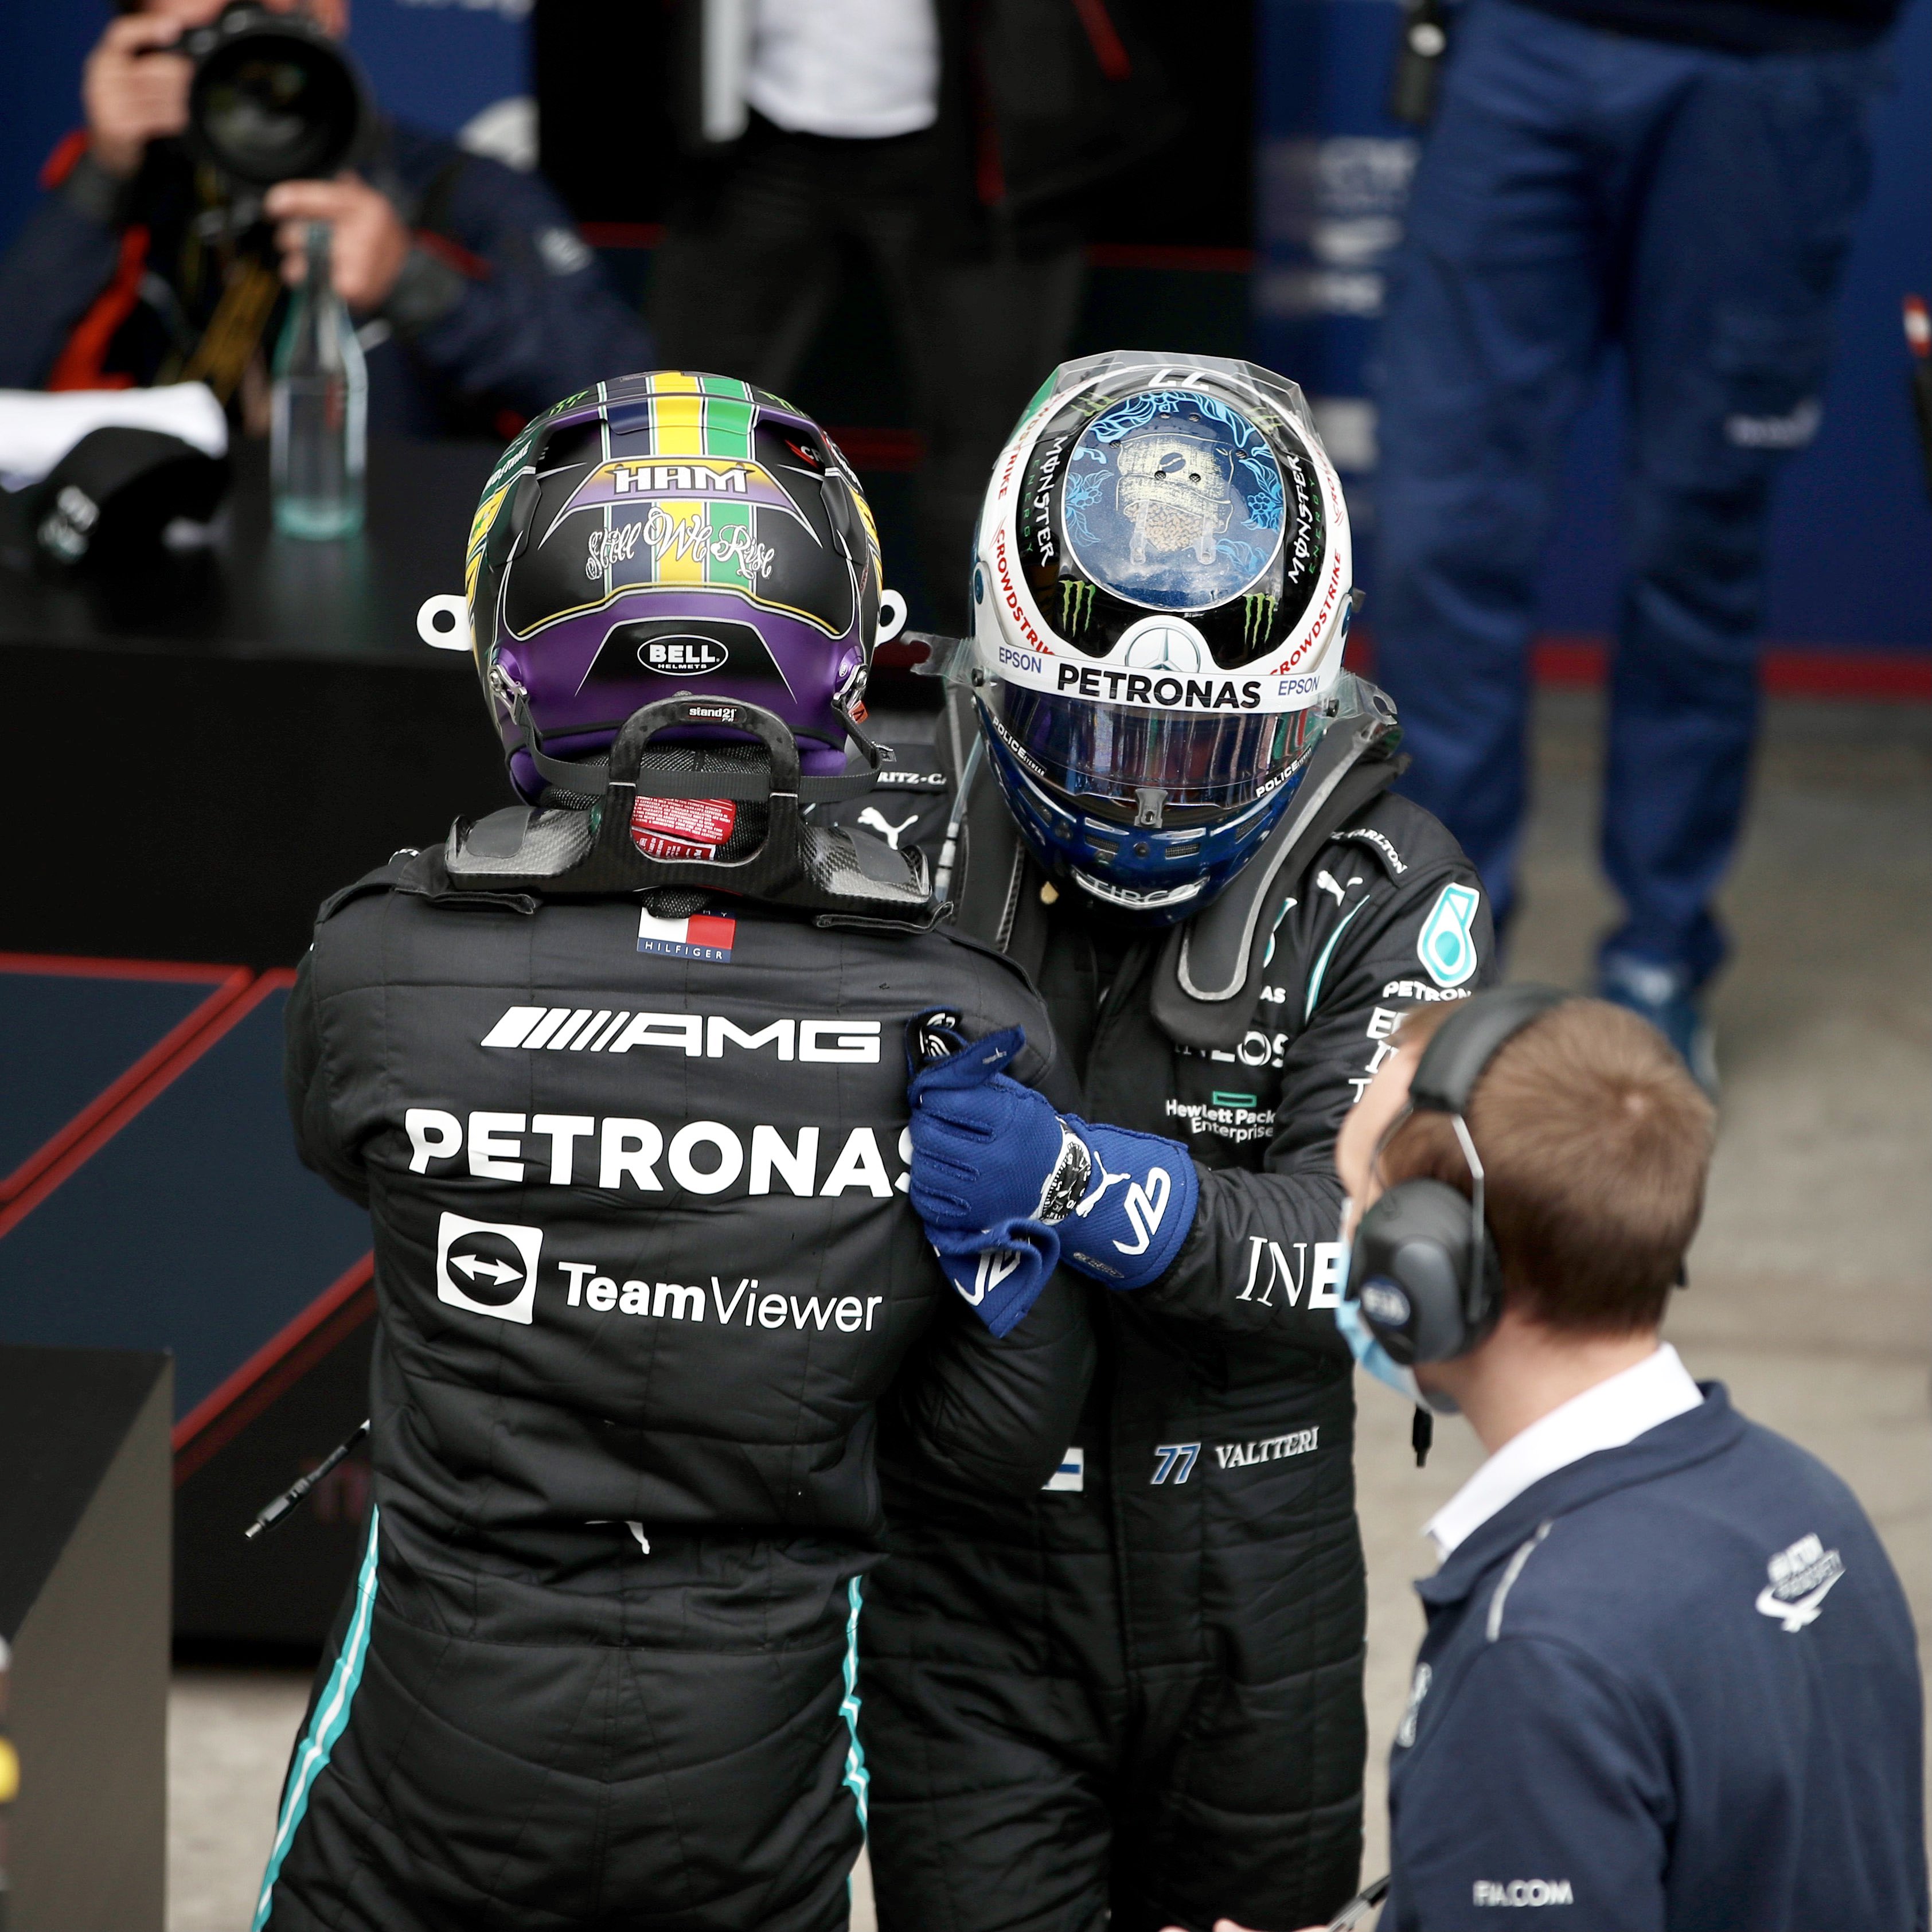 Jelang F1 2022, Mercedes Masih Ketar-ketir dengan Power Unit Anyar